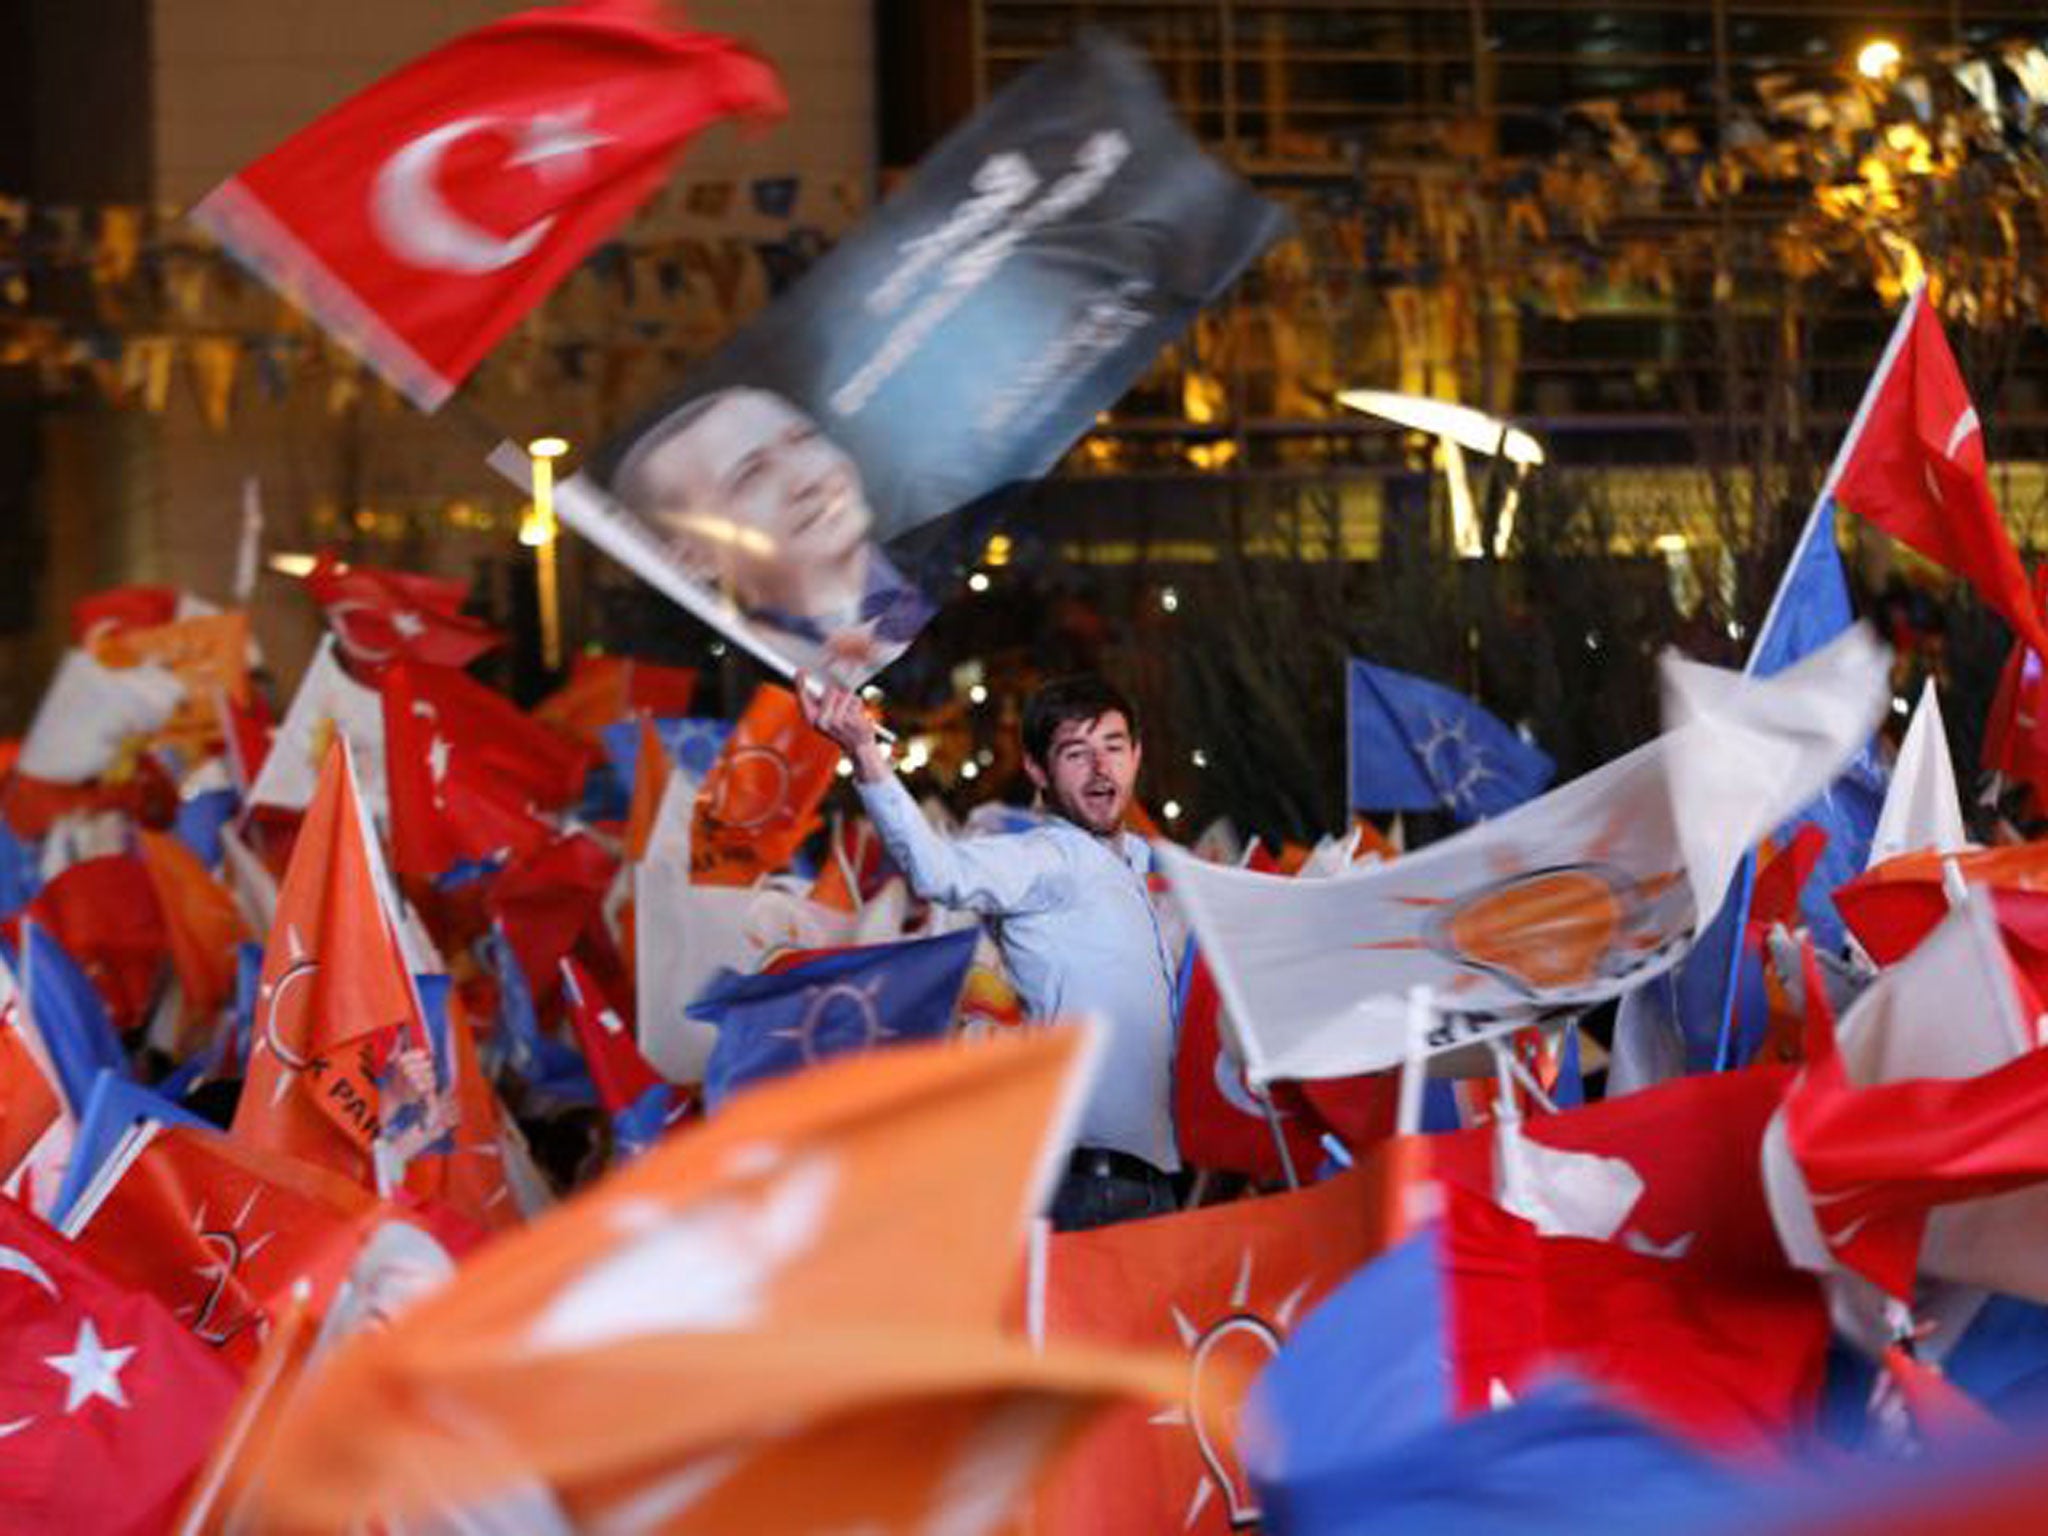 AK supporters celebrate in Ankara